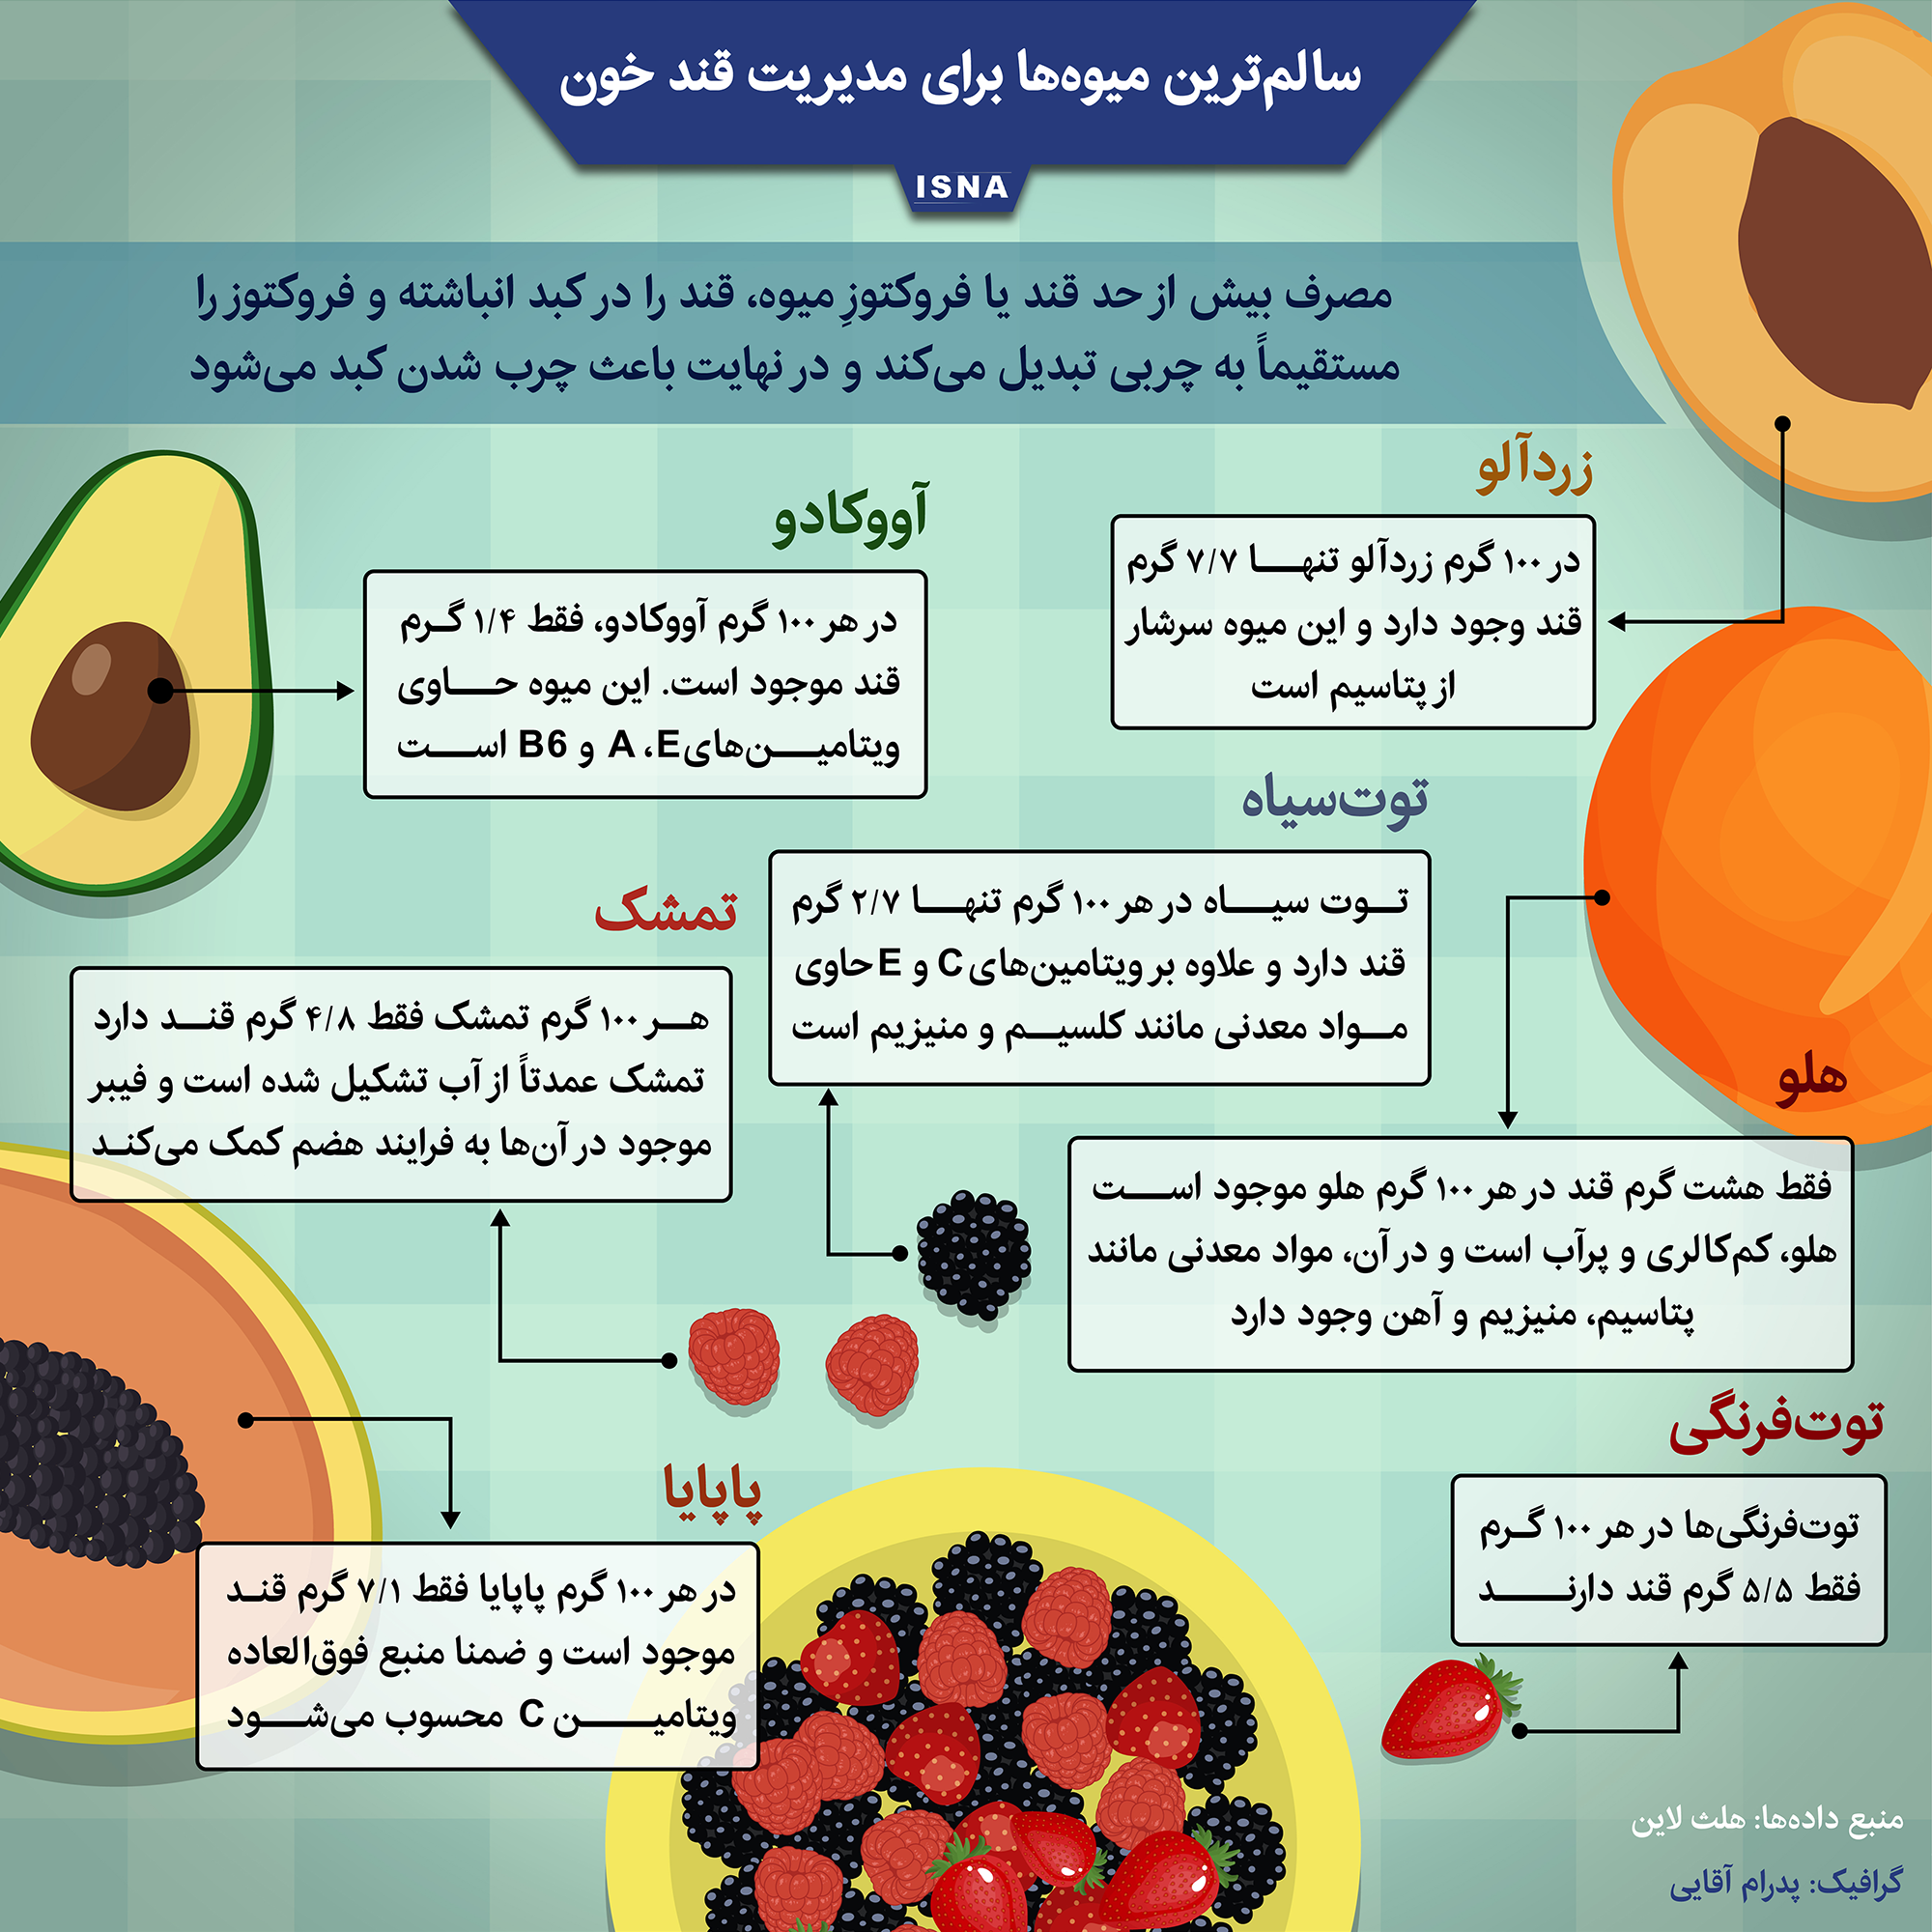 سالم‌ترین میوه‌ها برای مدیریت قند خون